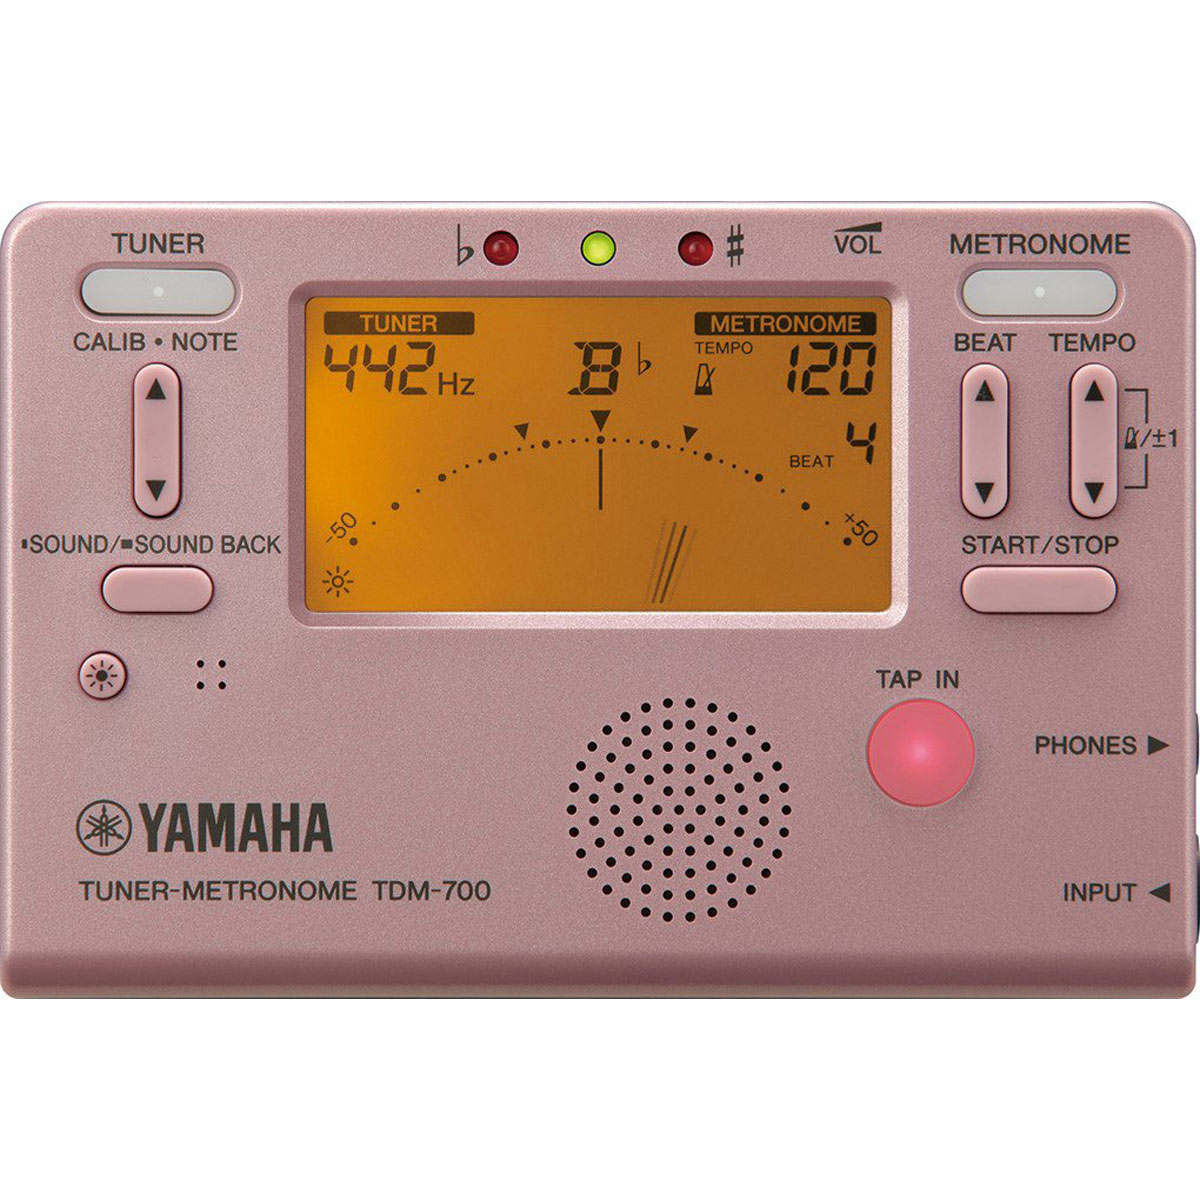 毎日続々入荷 YAMAHA TDM-700P チューナーメトロノーム ピンク 配送員設置送料無料 横浜店 YRK